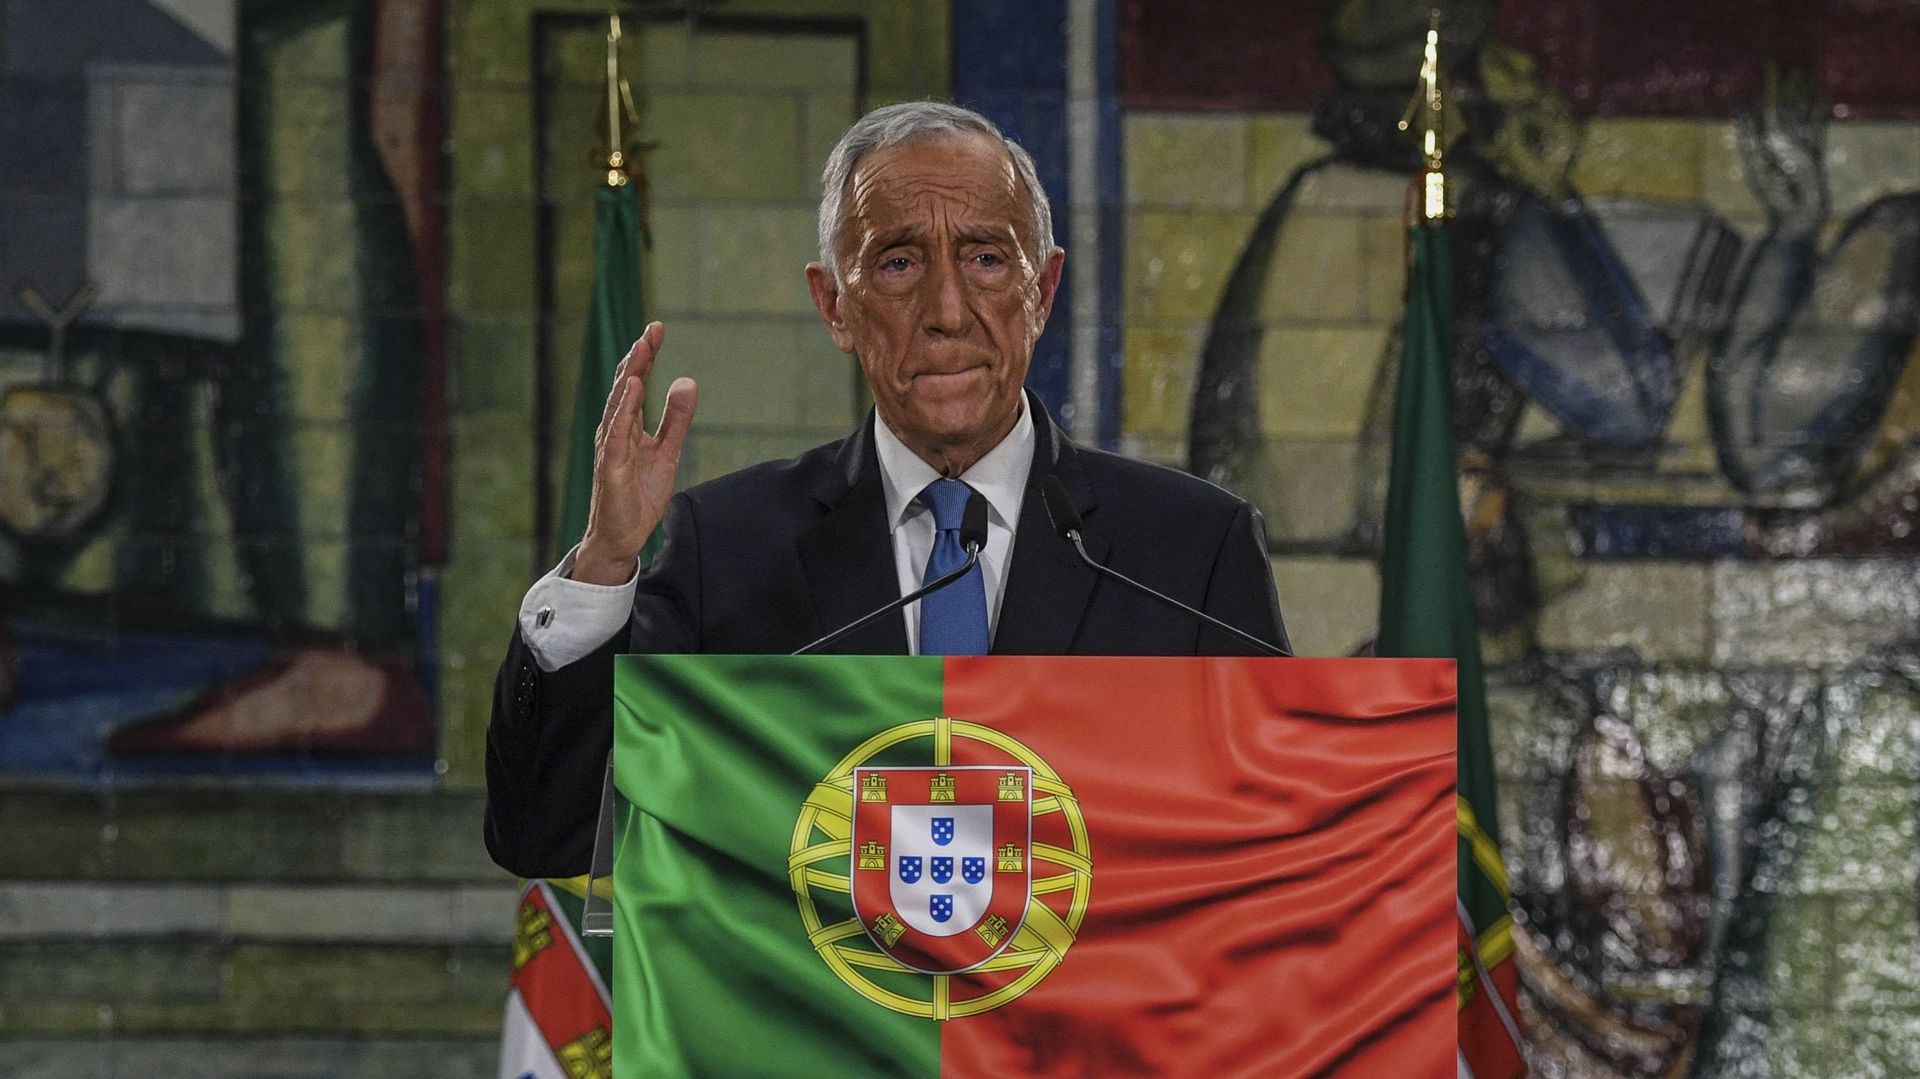 Marcelo Rebelo de Sousa, le président portugais